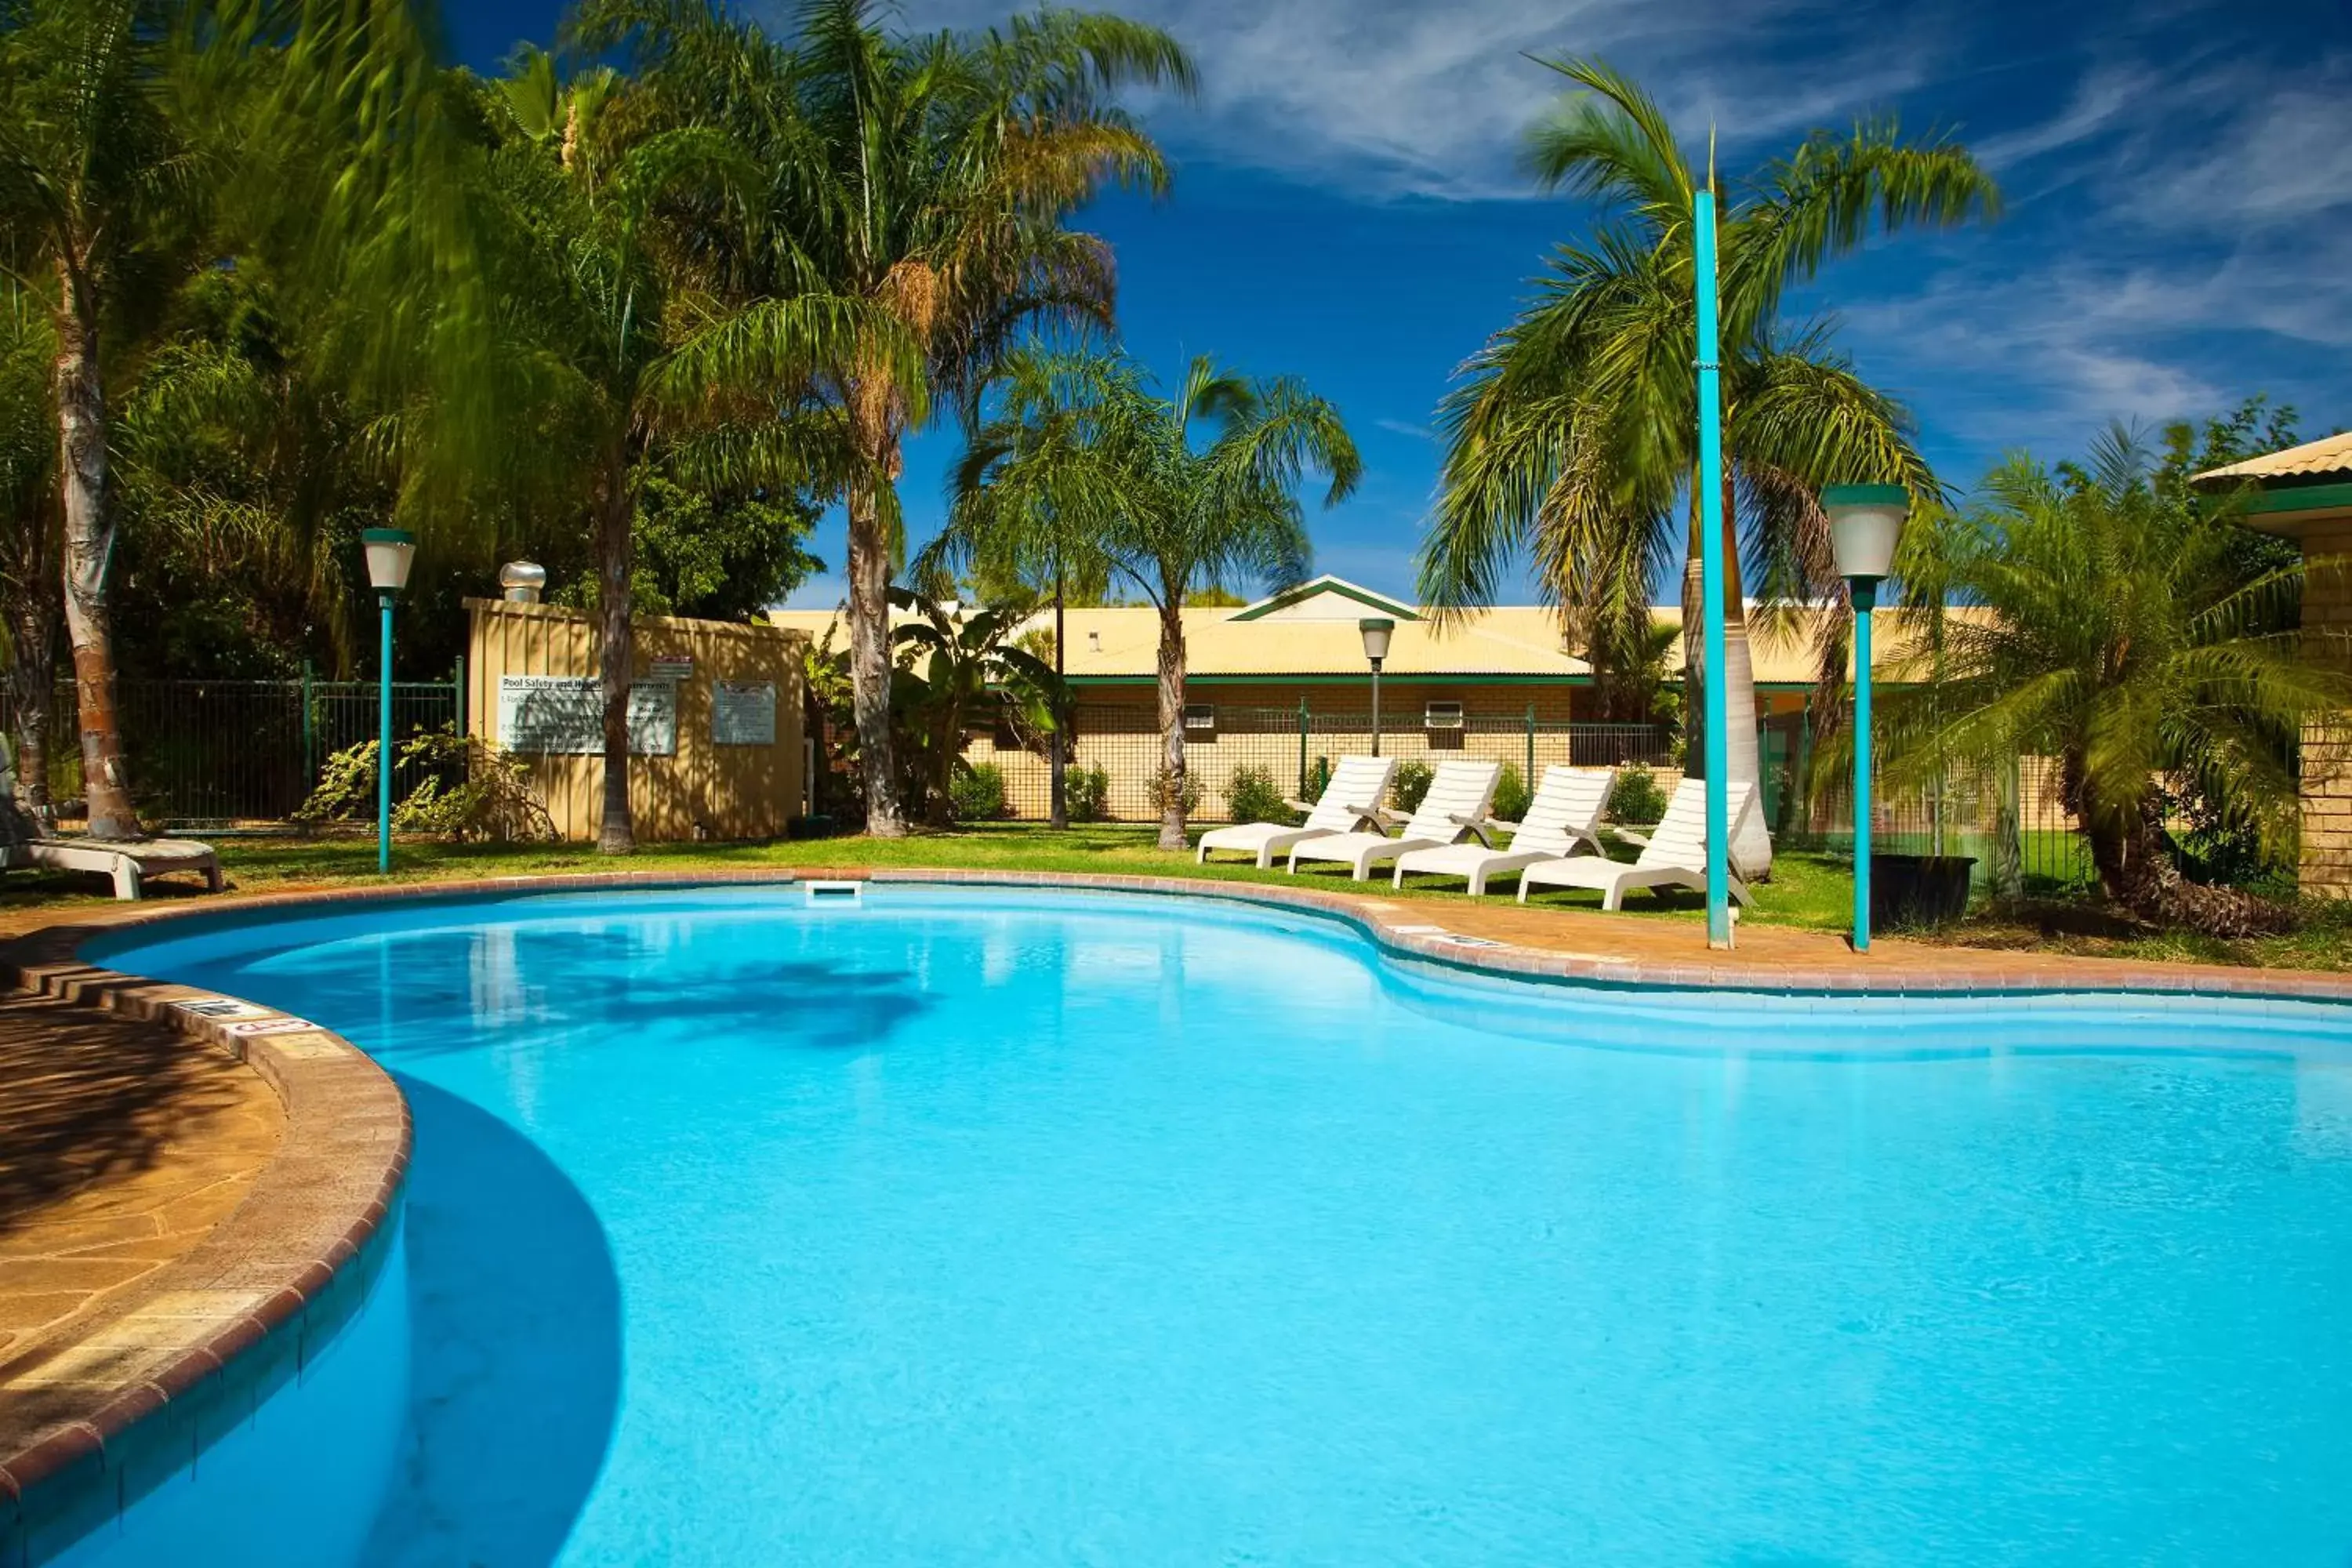 Pool view, Swimming Pool in Potshot Hotel Resort